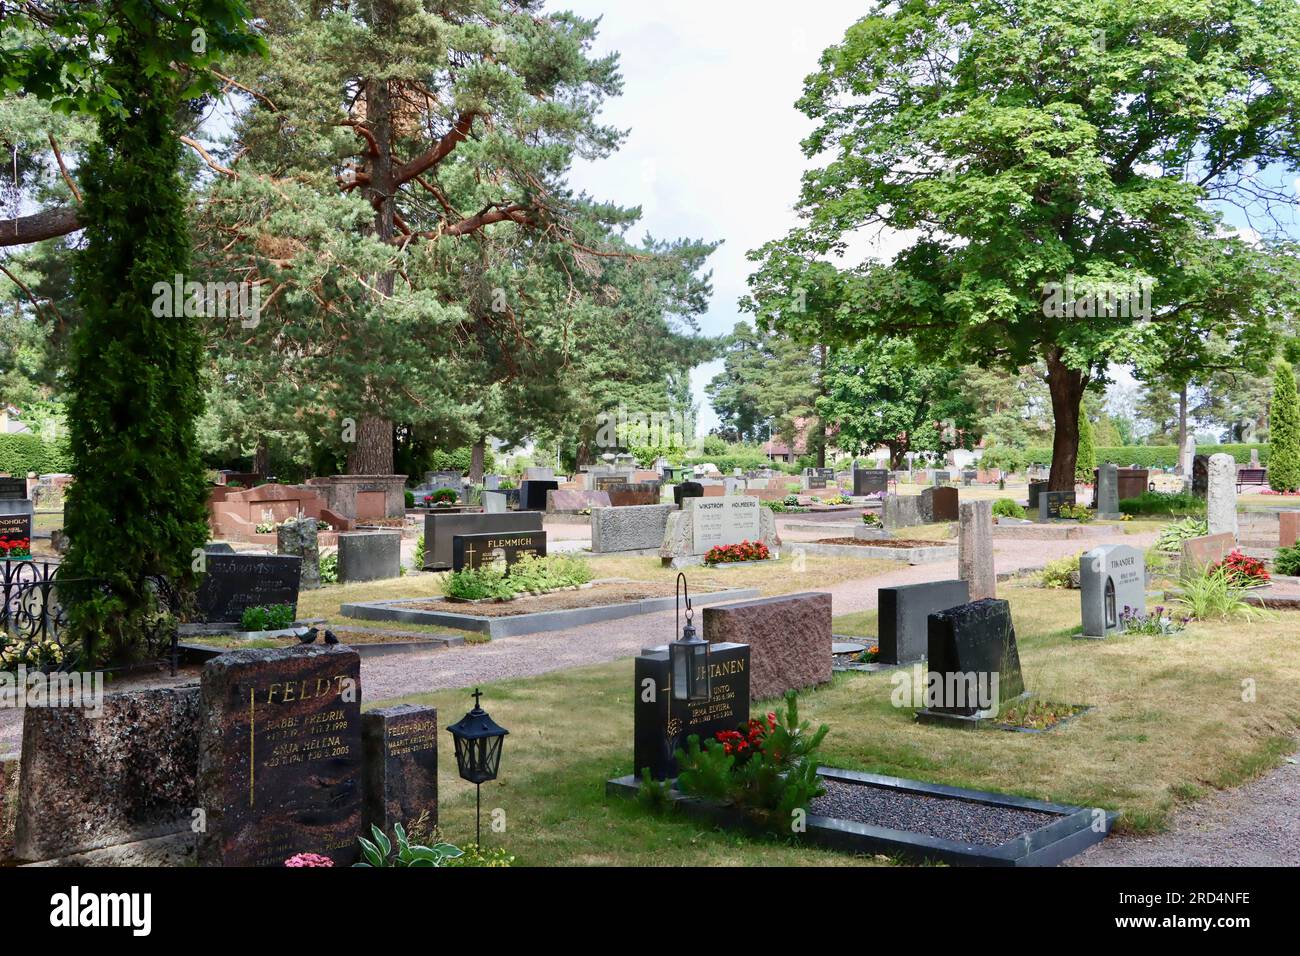 Le cimetière luthérien de Karjaa / Karis dans la région d'Uusimaa dans le sud de la Finlande Banque D'Images